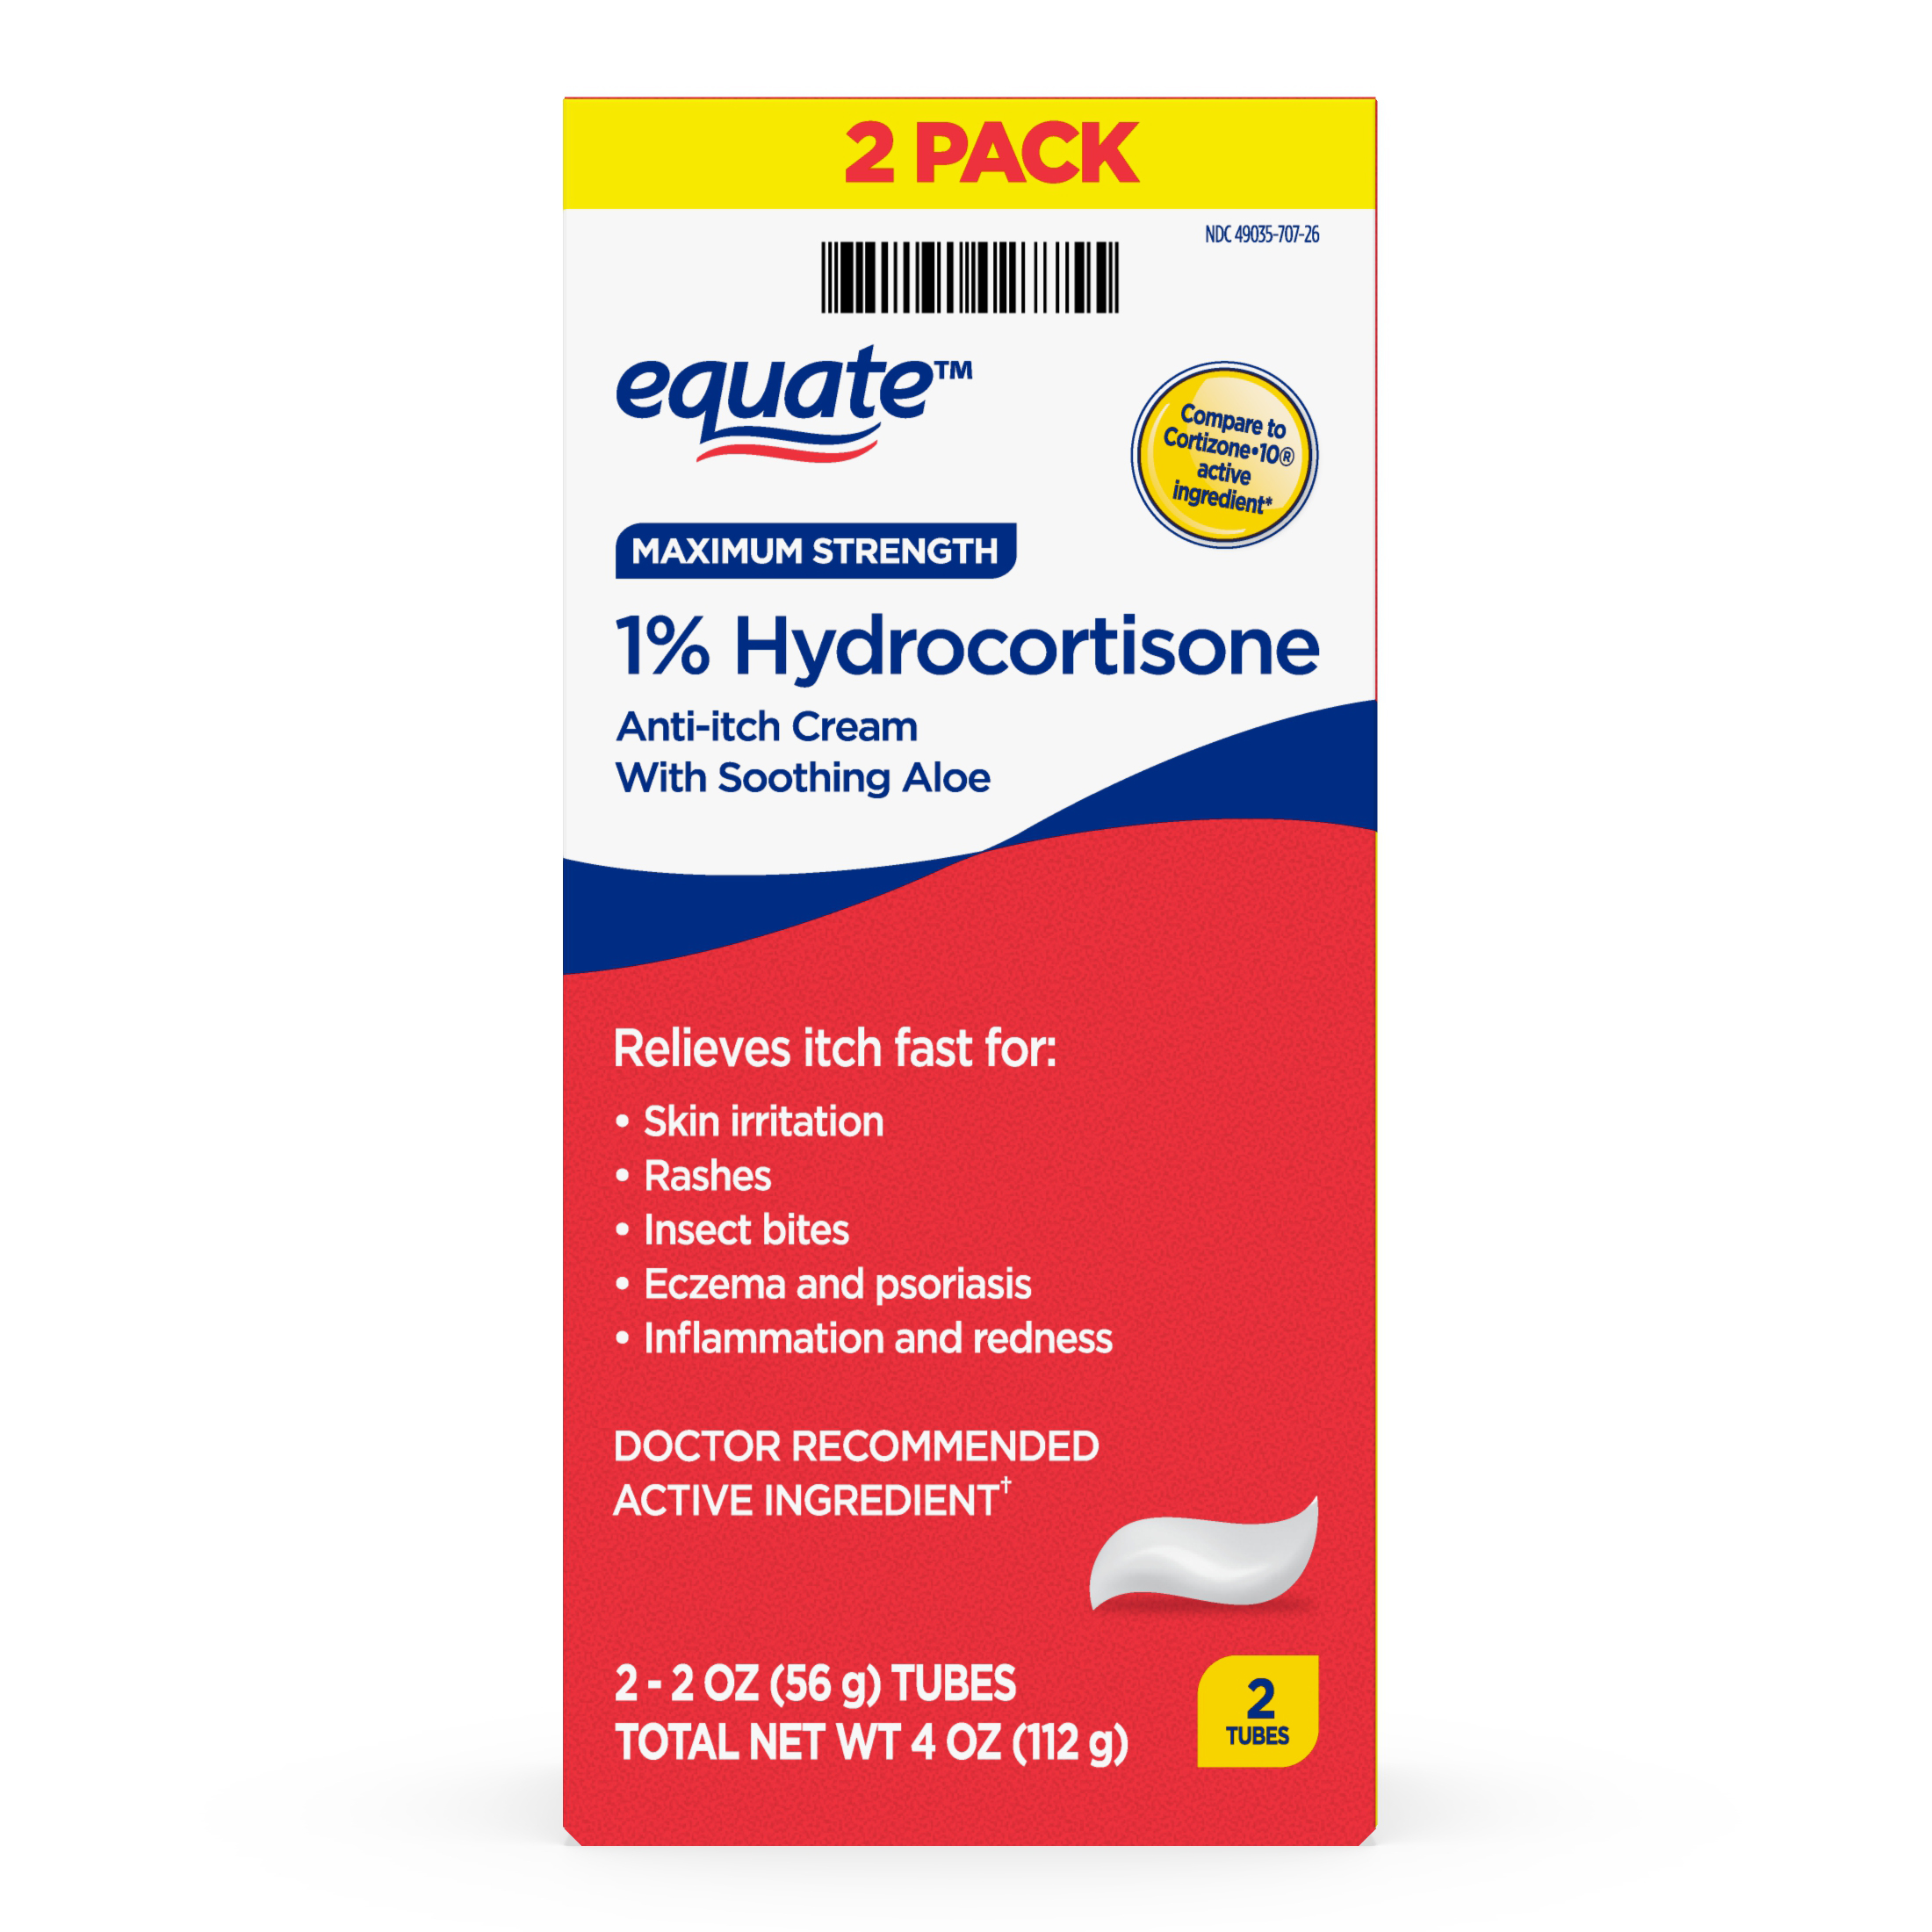 Equate Maximum Strength Anti-Itch Hydrocortisone Cream, 2 Oz, 2 Ct - image 1 of 7